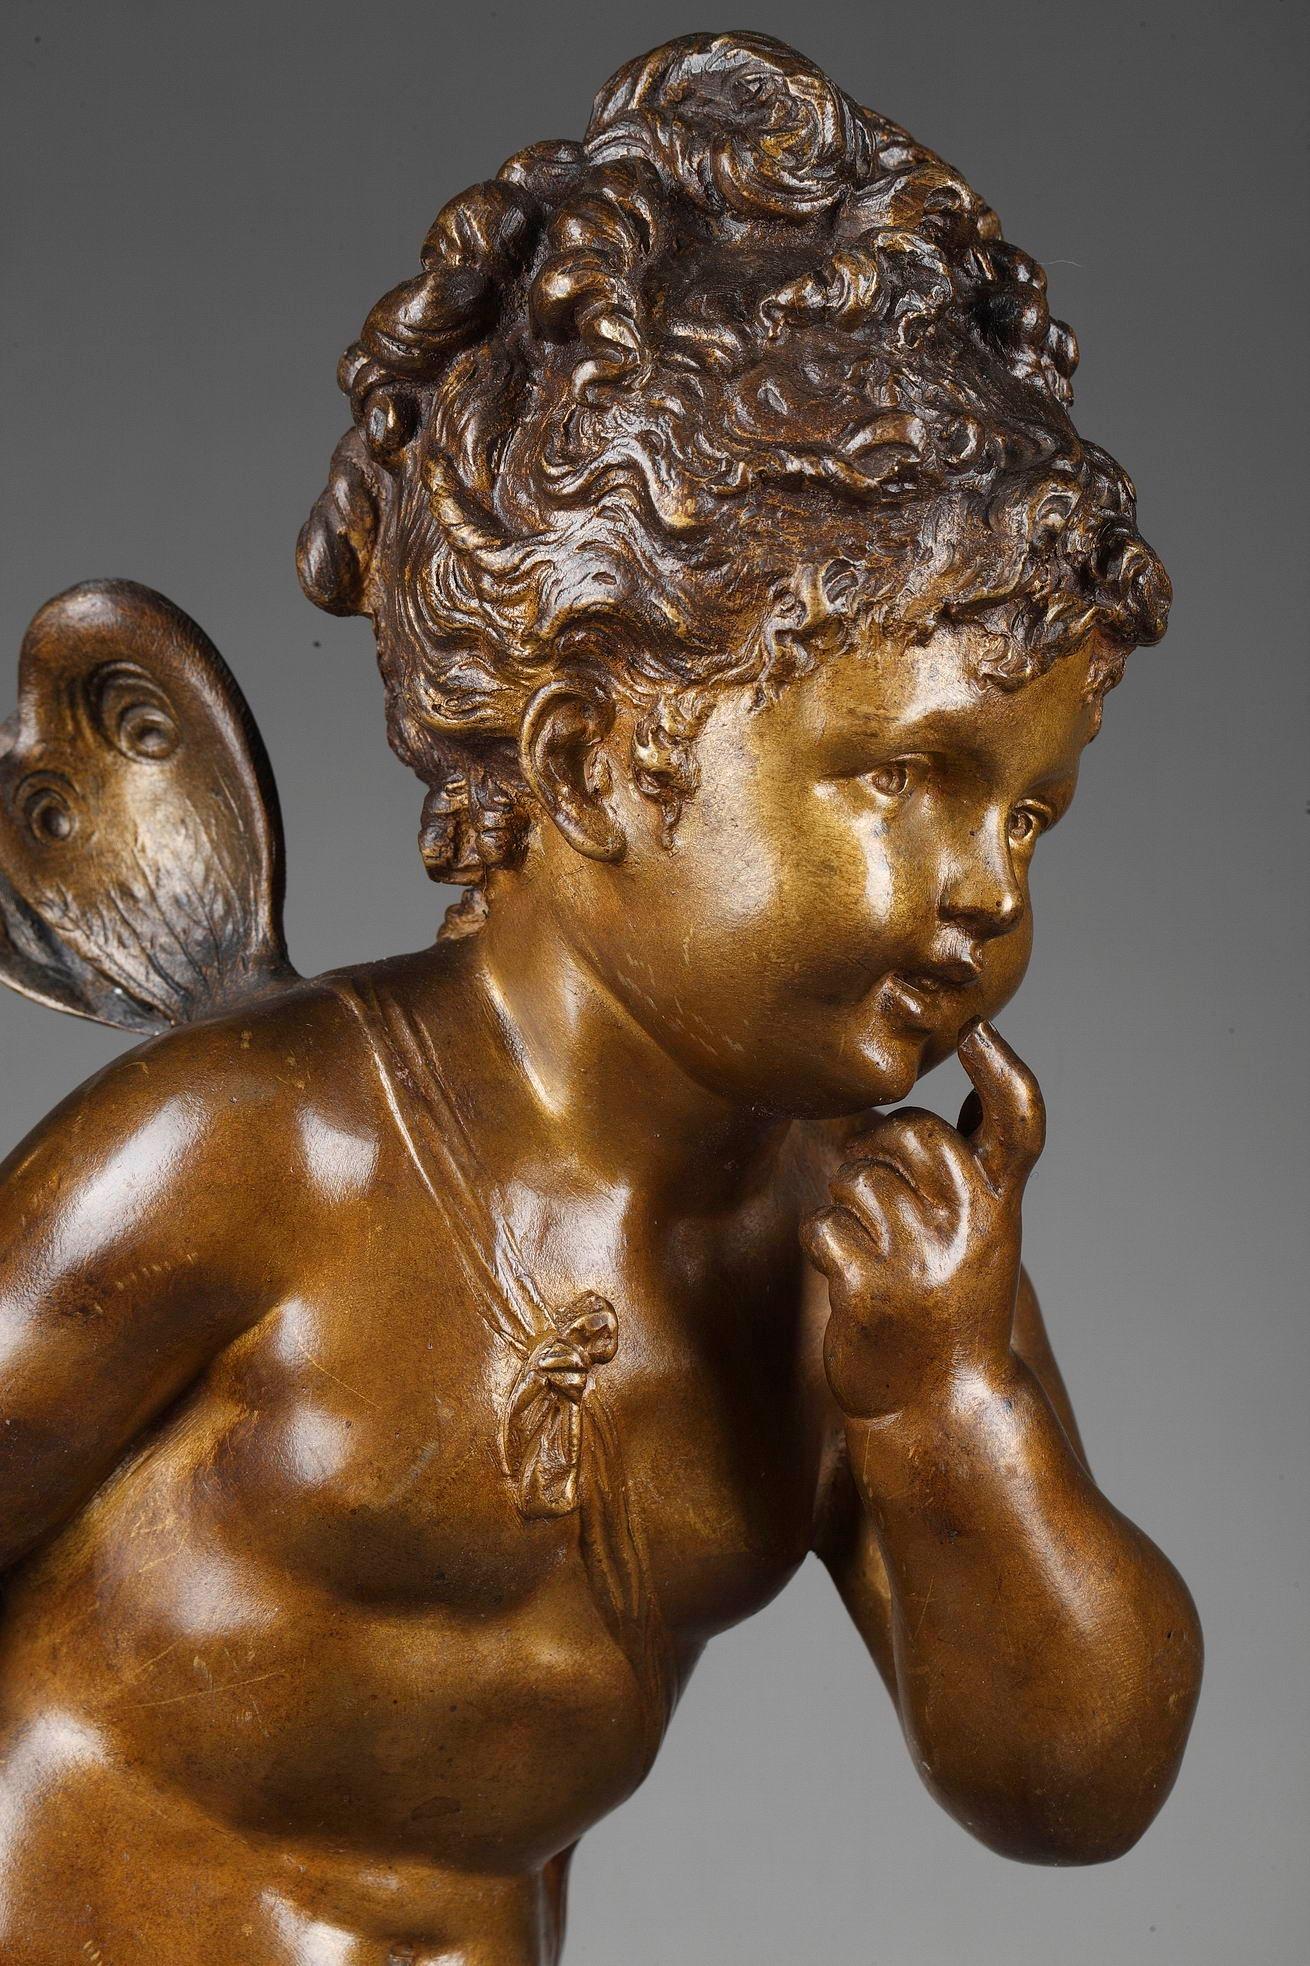 Cette figurine en bronze patiné brun et or a été réalisée par le sculpteur français Paul Duboy. Elle représente une petite fille, psyché, debout sur une base naturaliste. La sculpture en bronze est posée sur un socle rond en marbre. Signé : Paul